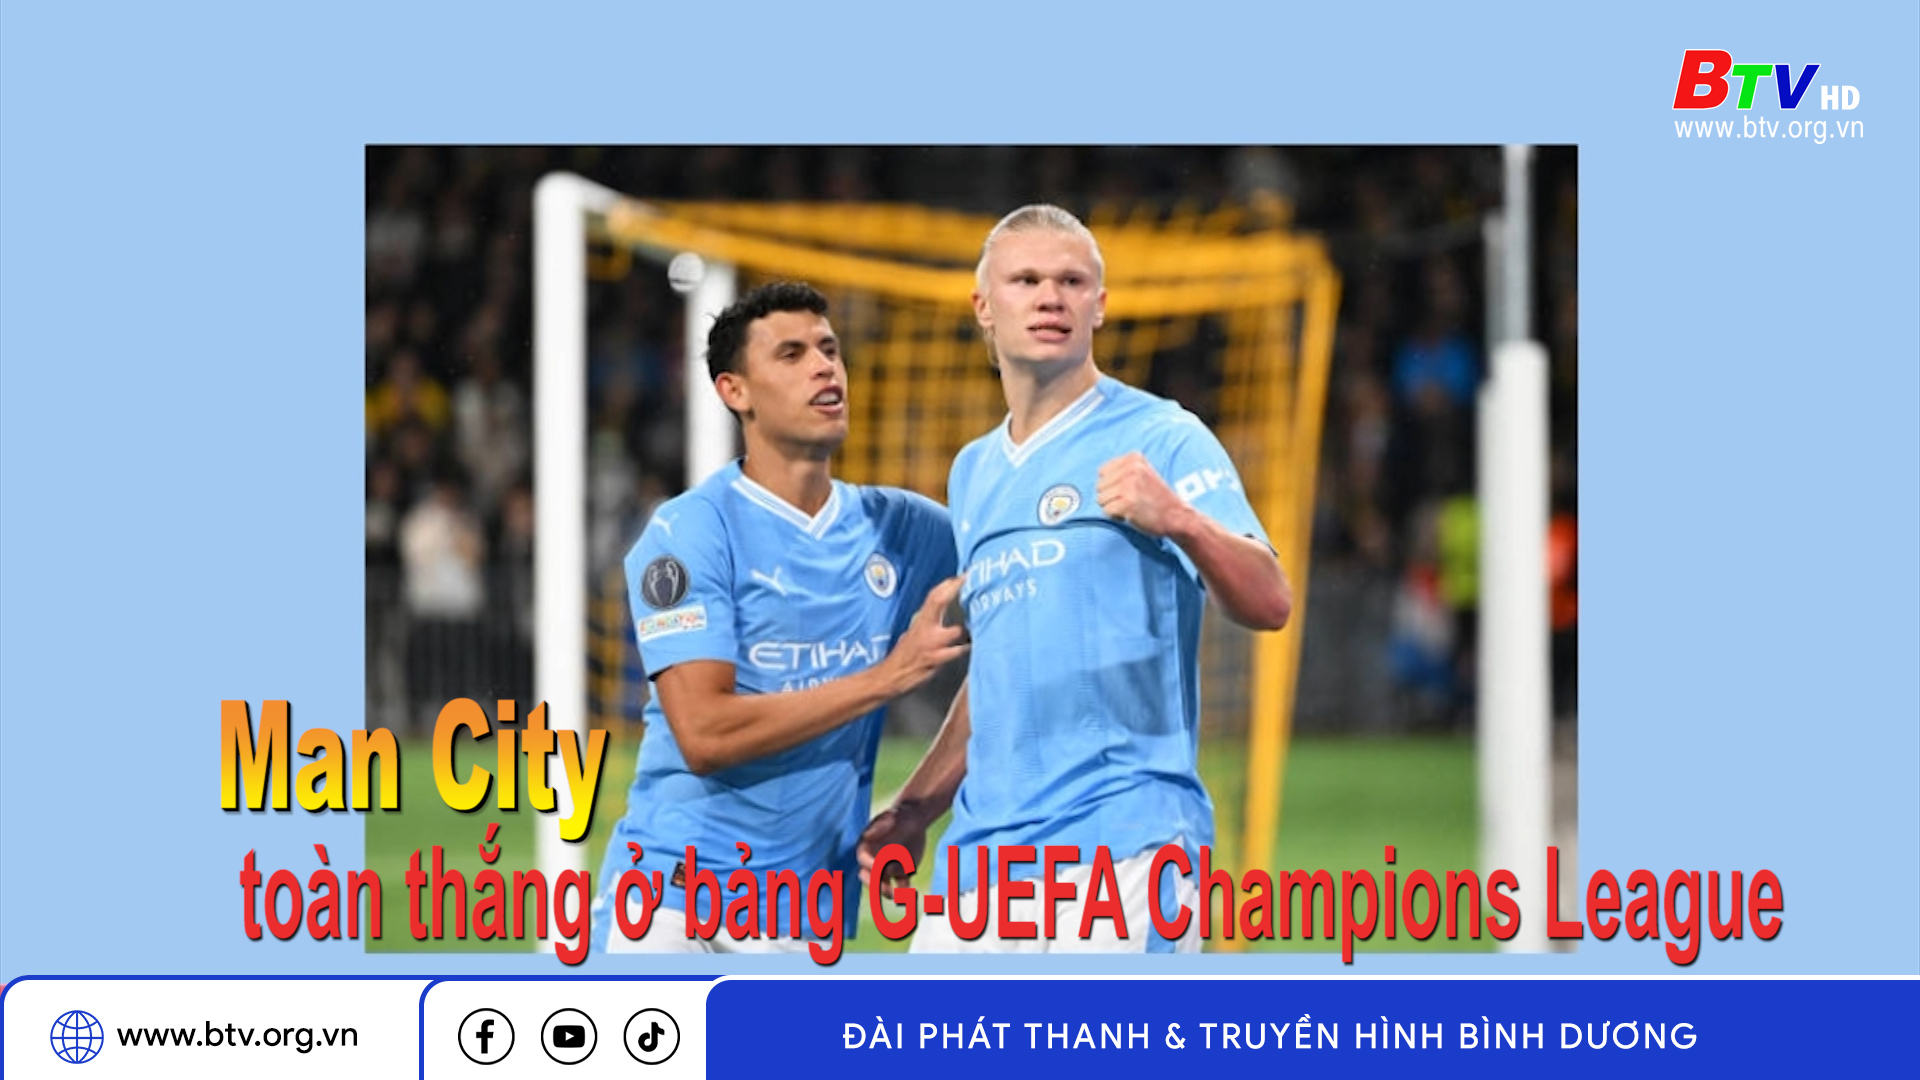 Man City toàn thắng ở bảng G-UEFA Champions League